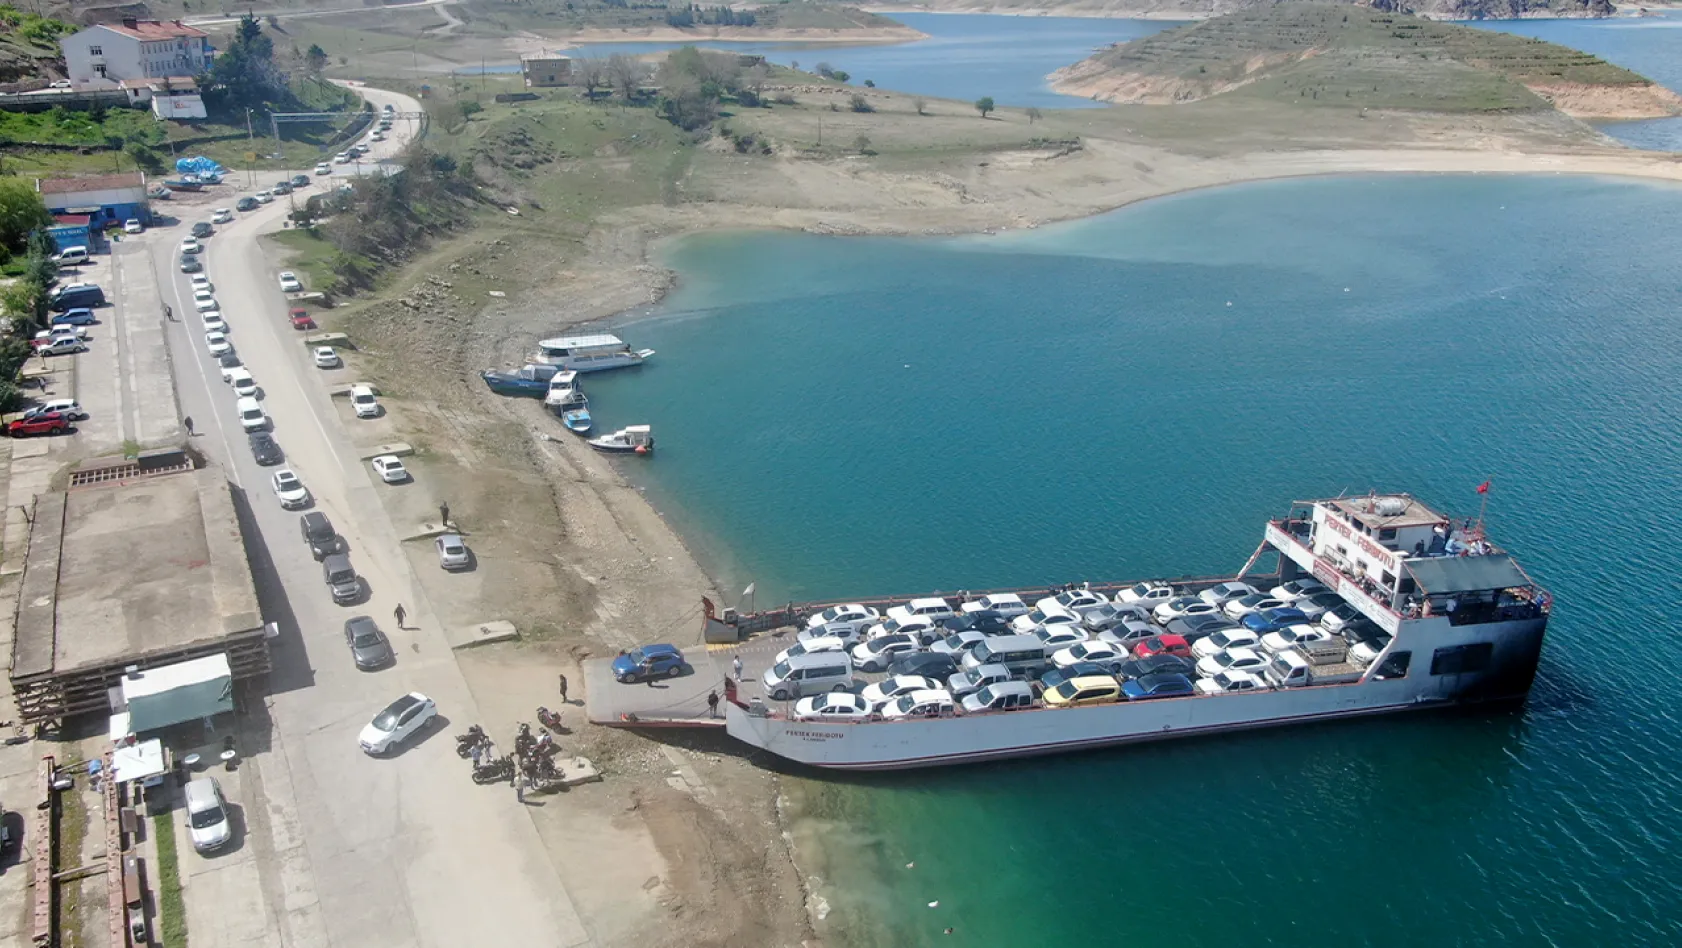 Elazığ-Pertek feribotlarında bayram yoğunluğu